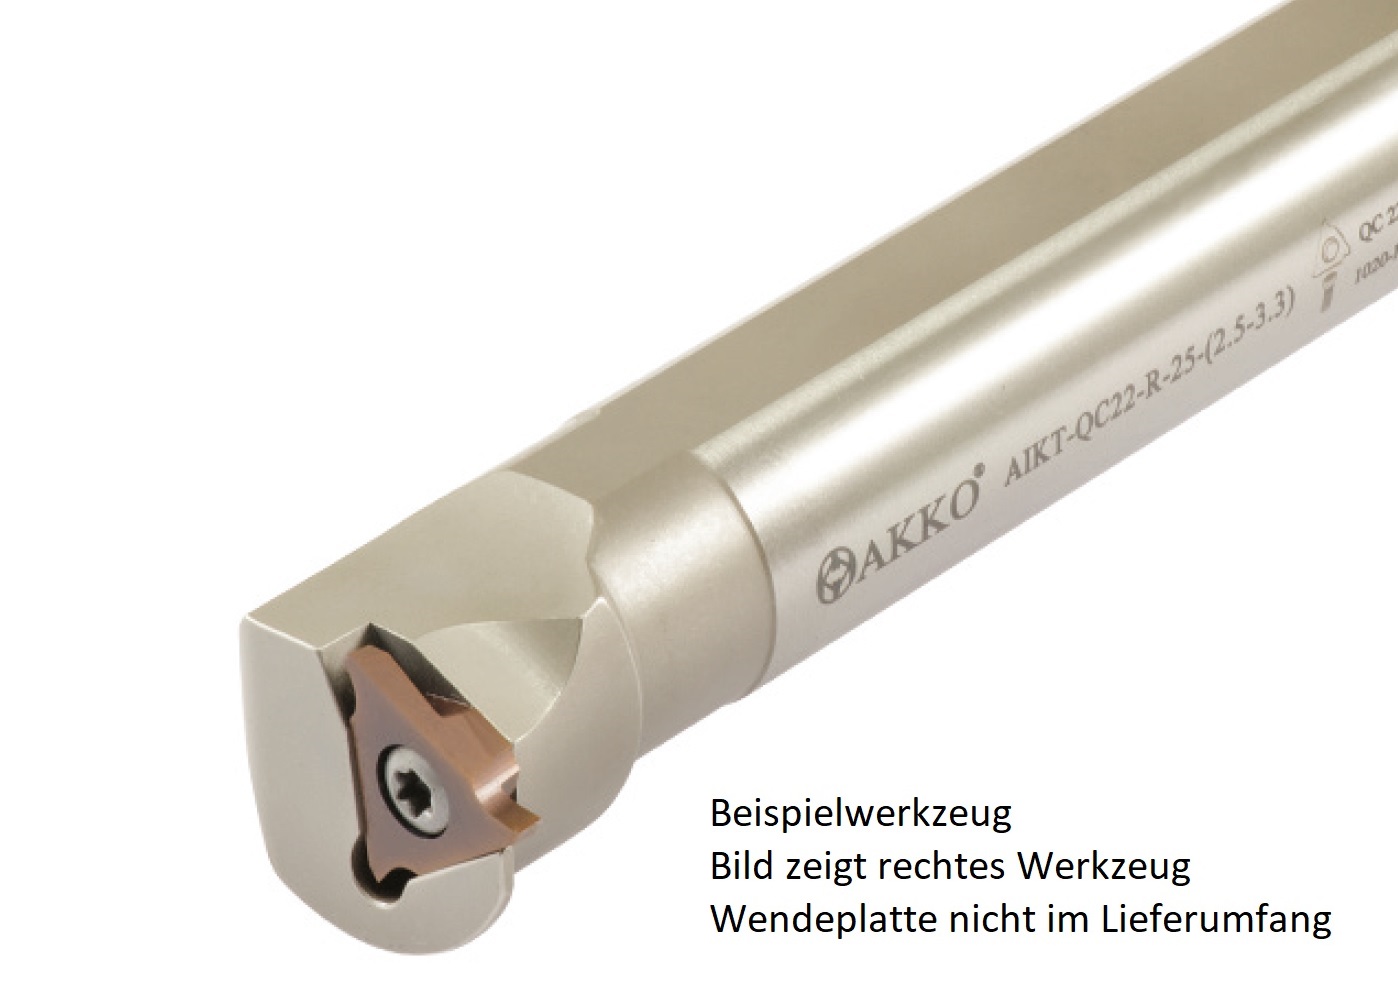 AKKO-Innen-Stechhalter, kompatibel mit ZCC-Stechplatte QC22R (1.00-2.30)
Schaft-ø 32, ohne Innenkühlung, rechts